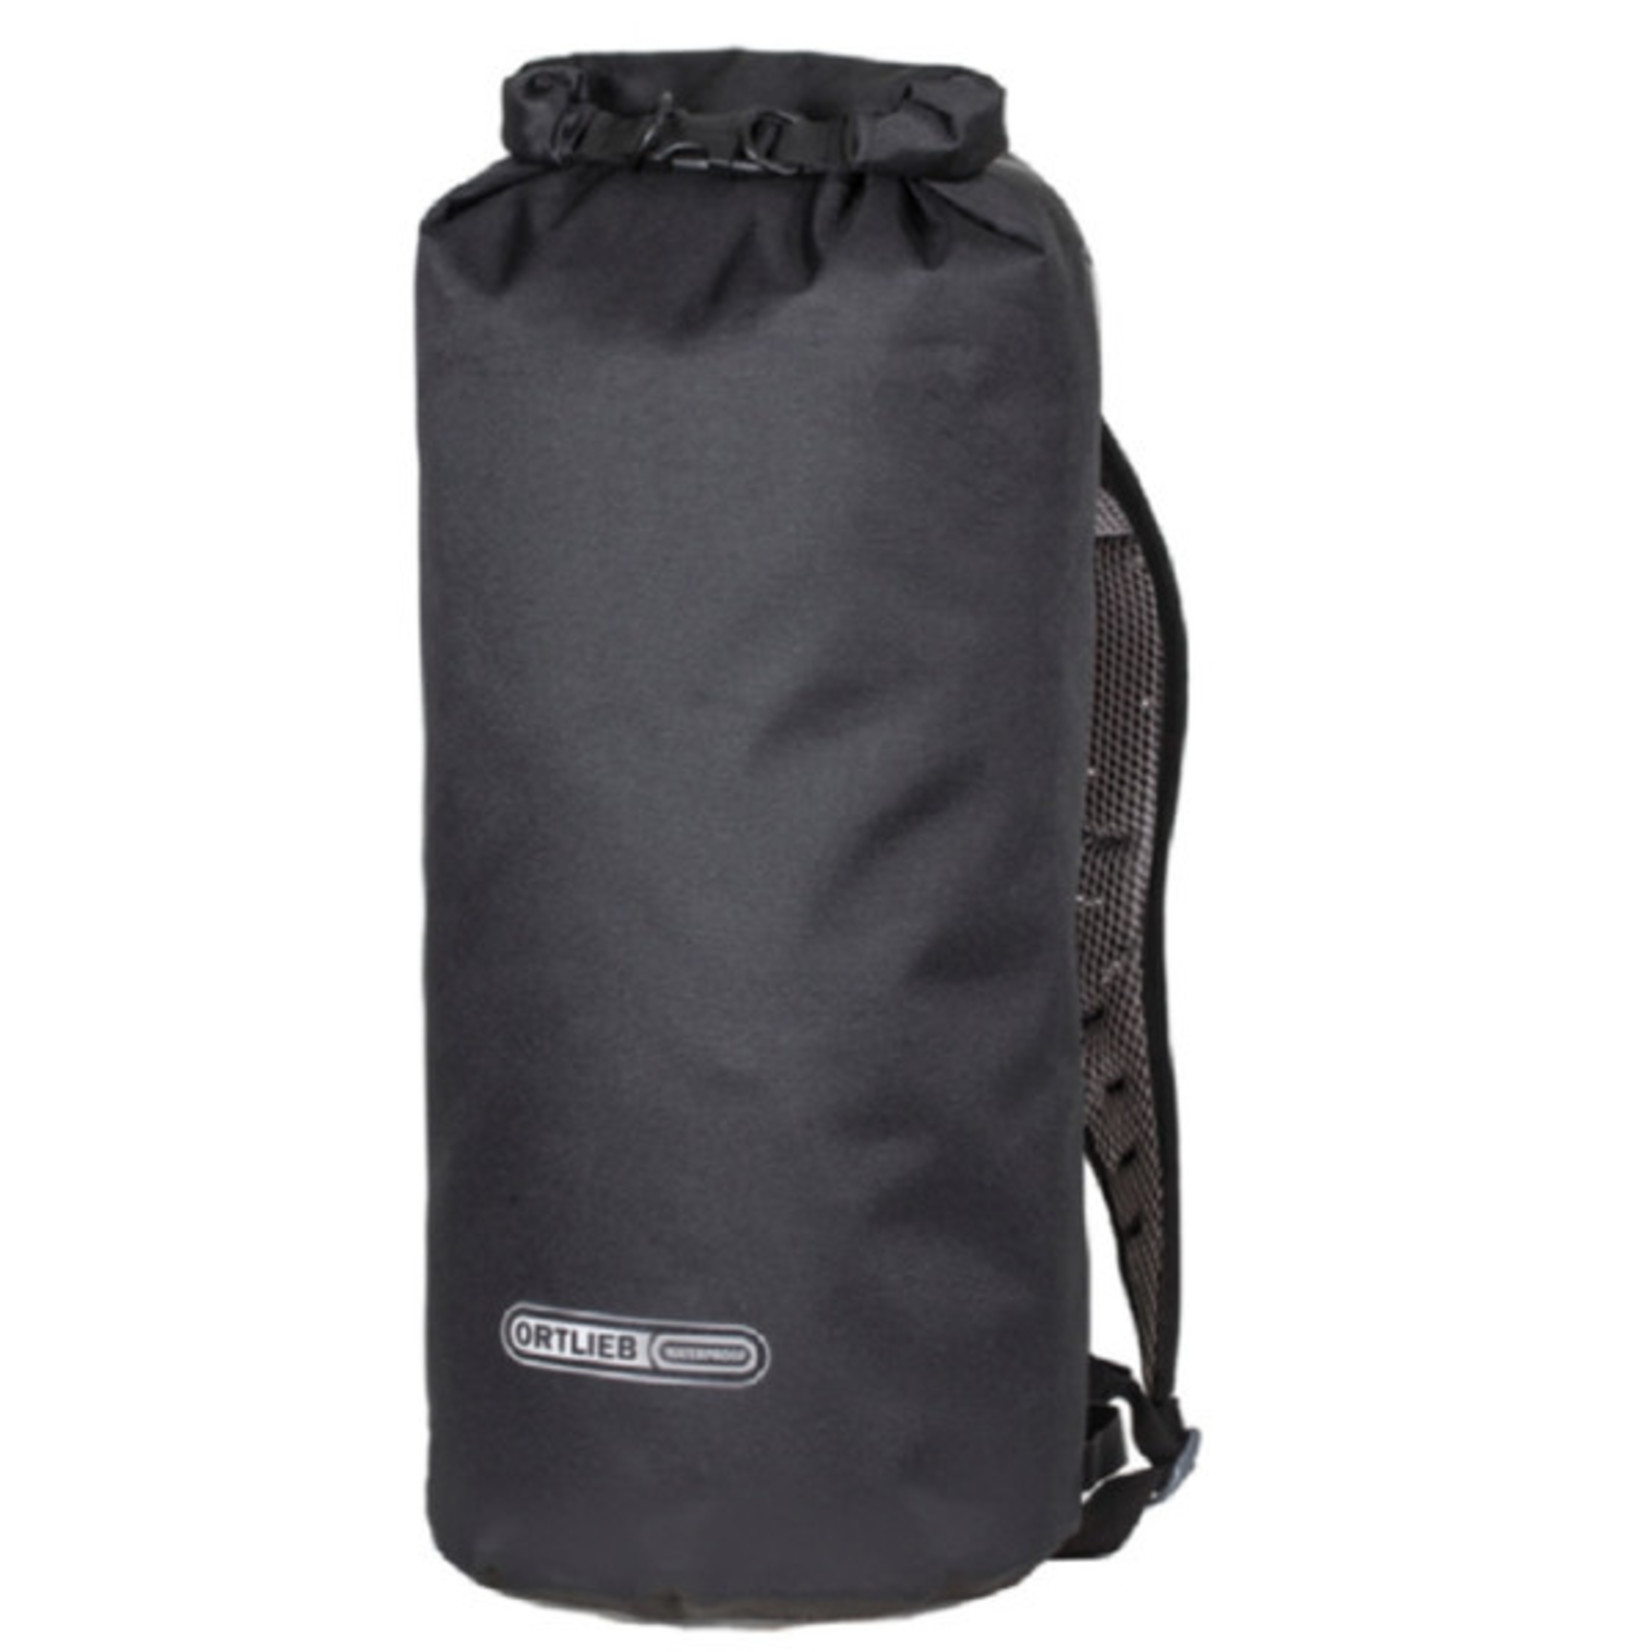 Ortlieb Ortlieb X-Plorer Stuff Sack Bag R17254 Large - 59L Black